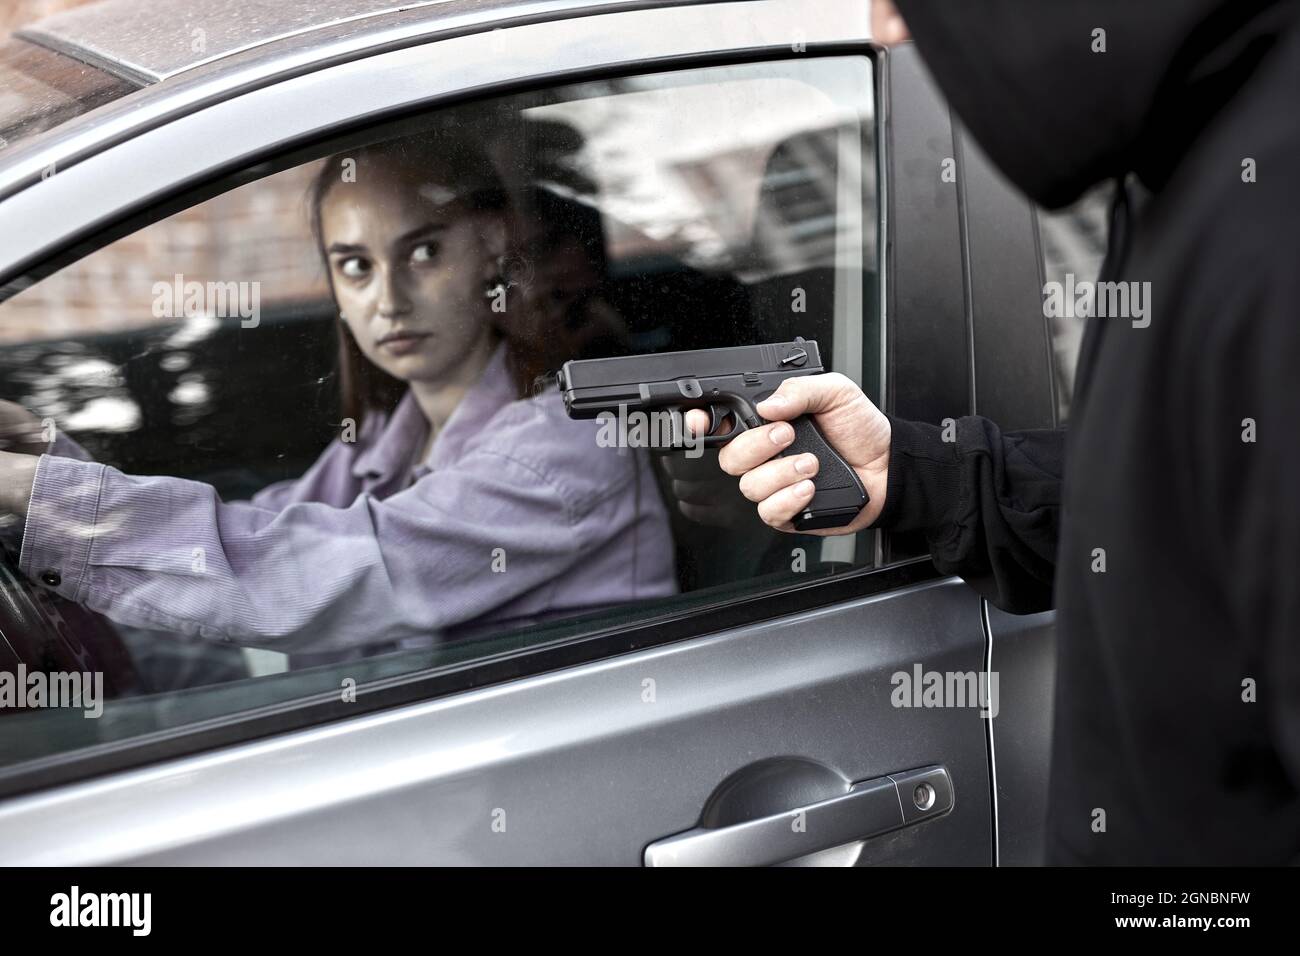 Bandit Mann Räuber hält Handfeuerwaffe Gangster zu entführen Geisel Frau Fahrer Auto schockiert und gefährlich auf Straße Gewalt Konzept. Seitenansicht auf sc Stockfoto